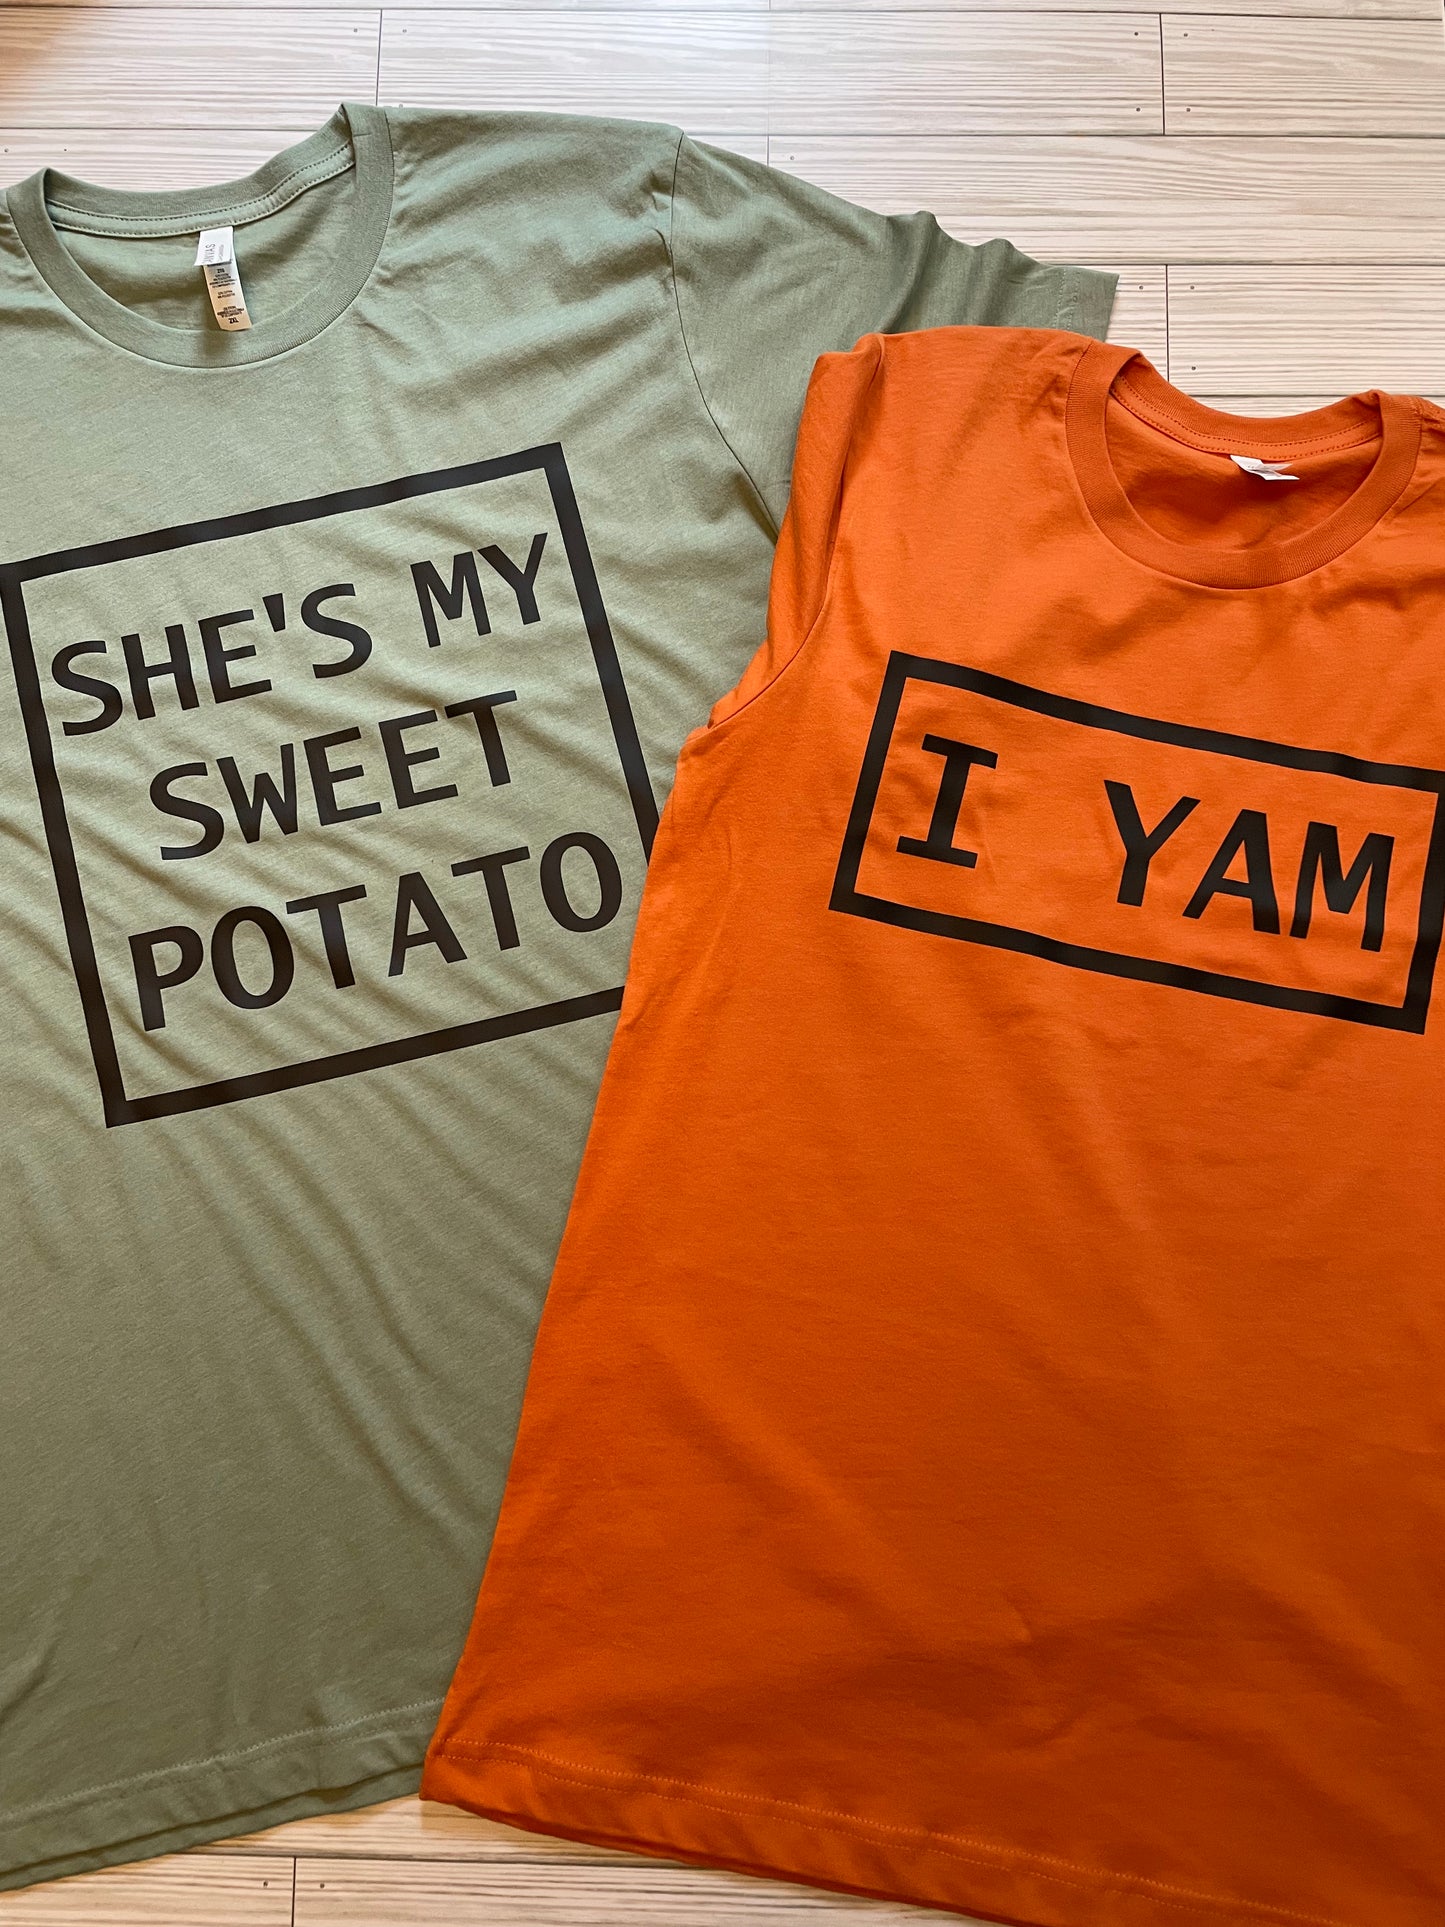 Sweet Potato and I Yam